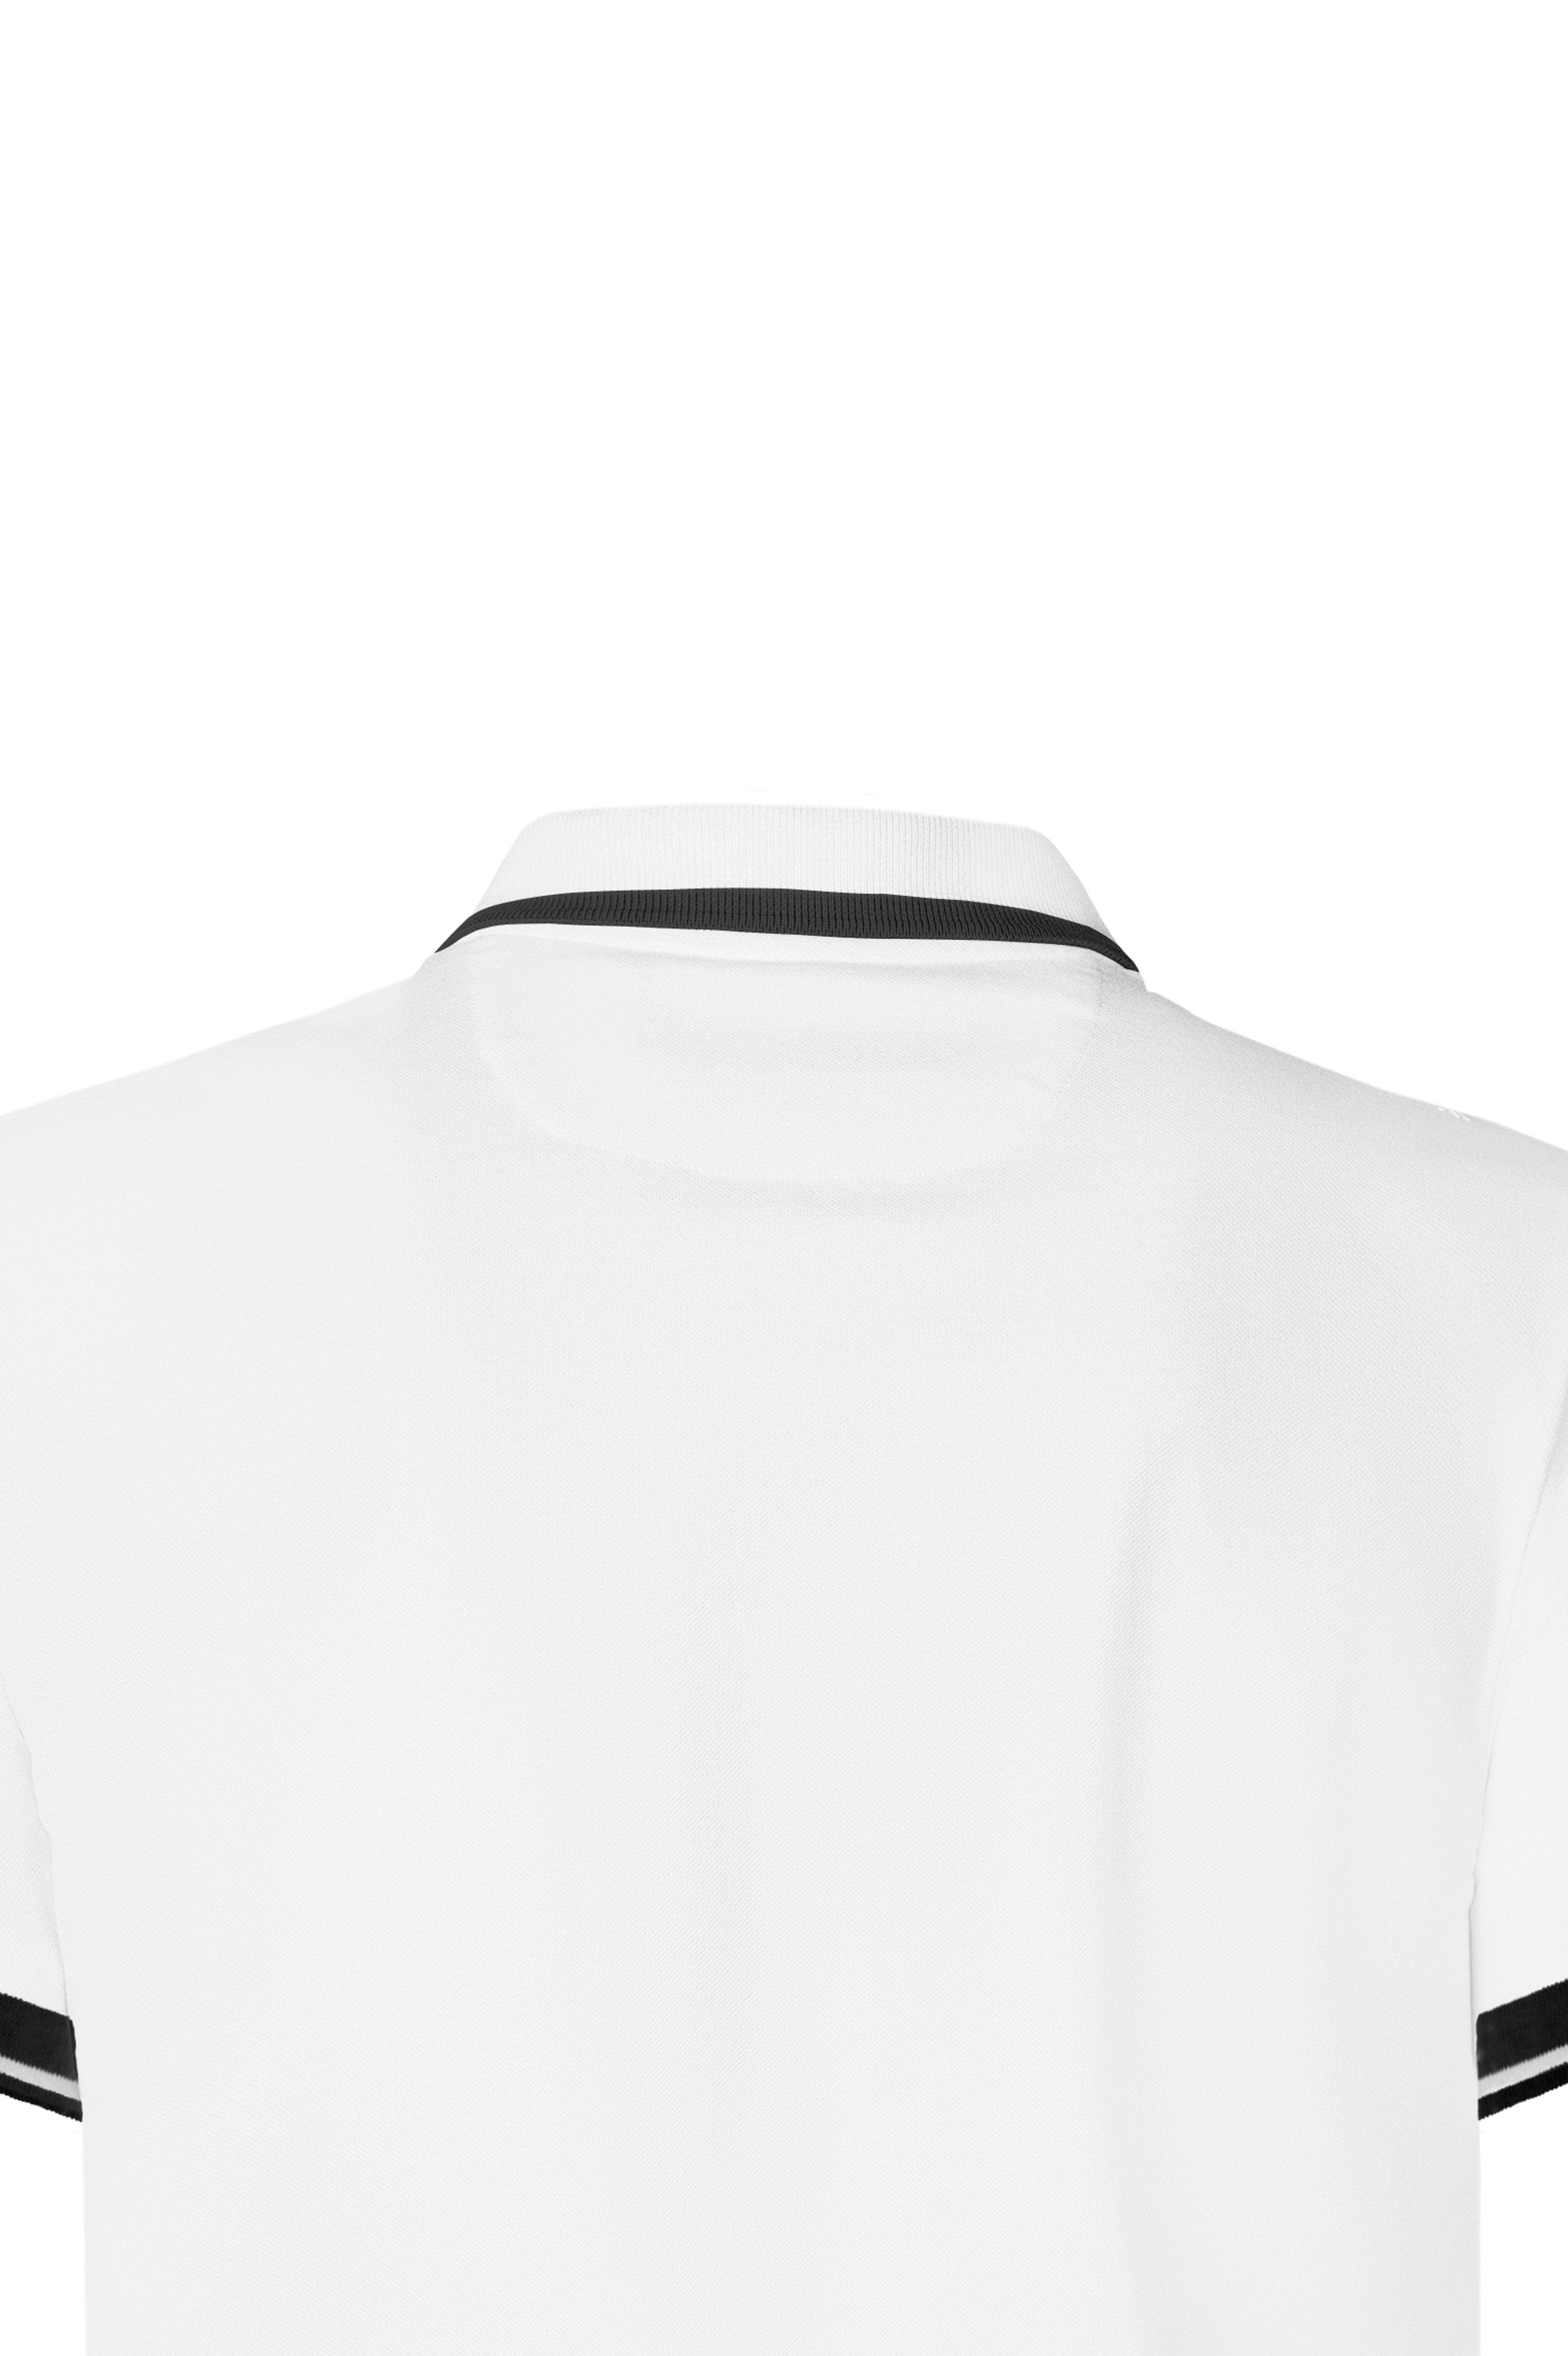 NEILAN POLO WHITE | Monastery Couture